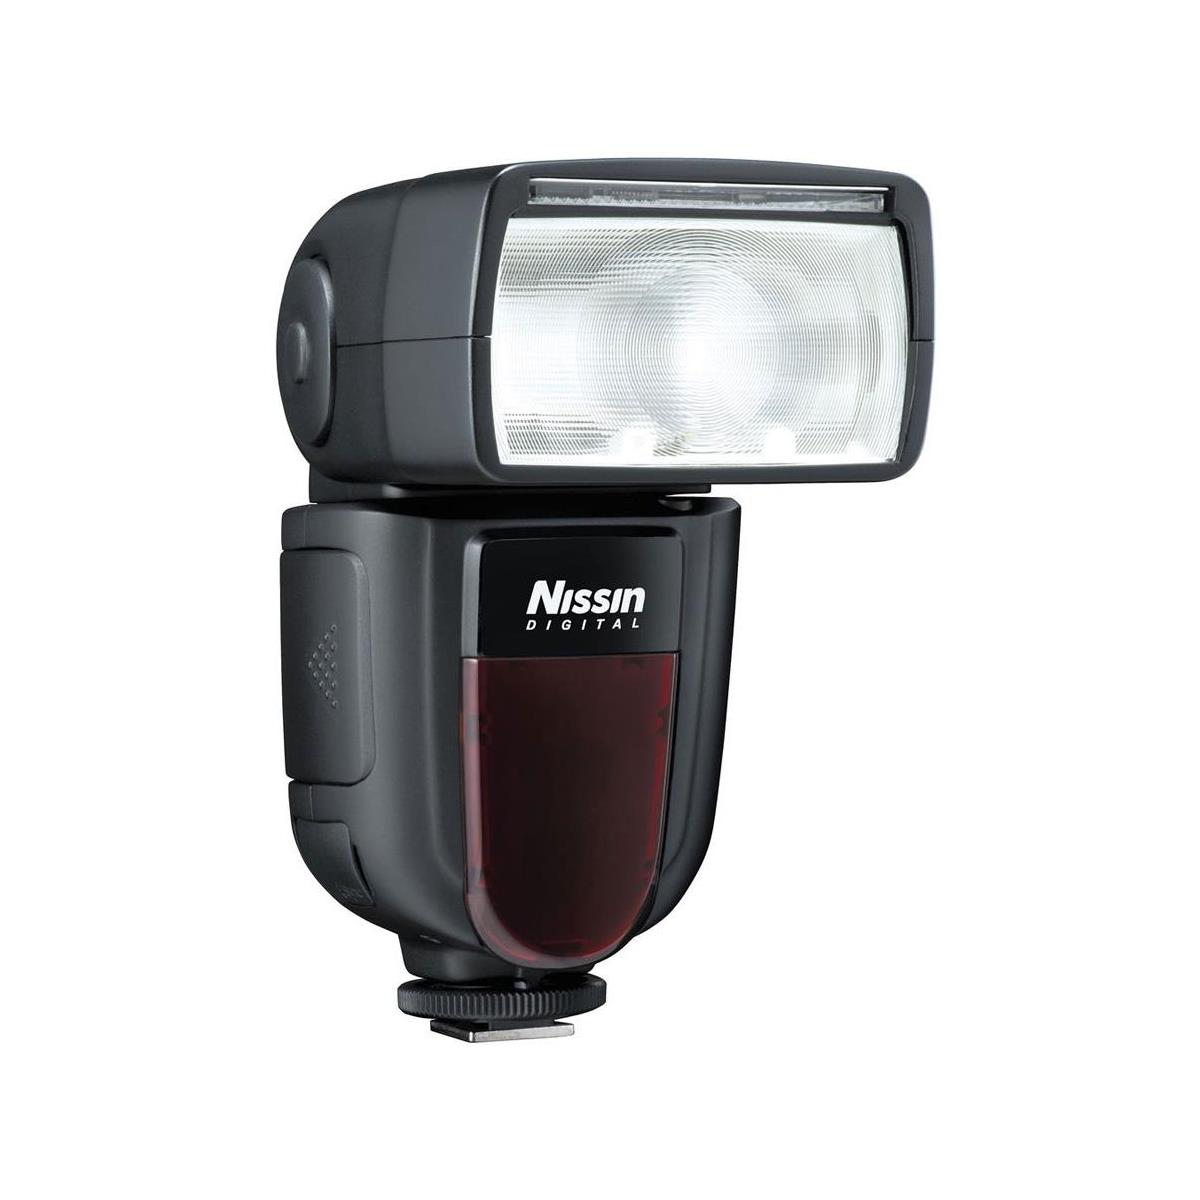 Image of Nissin Di700A Flash for Canon DSLR Cameras